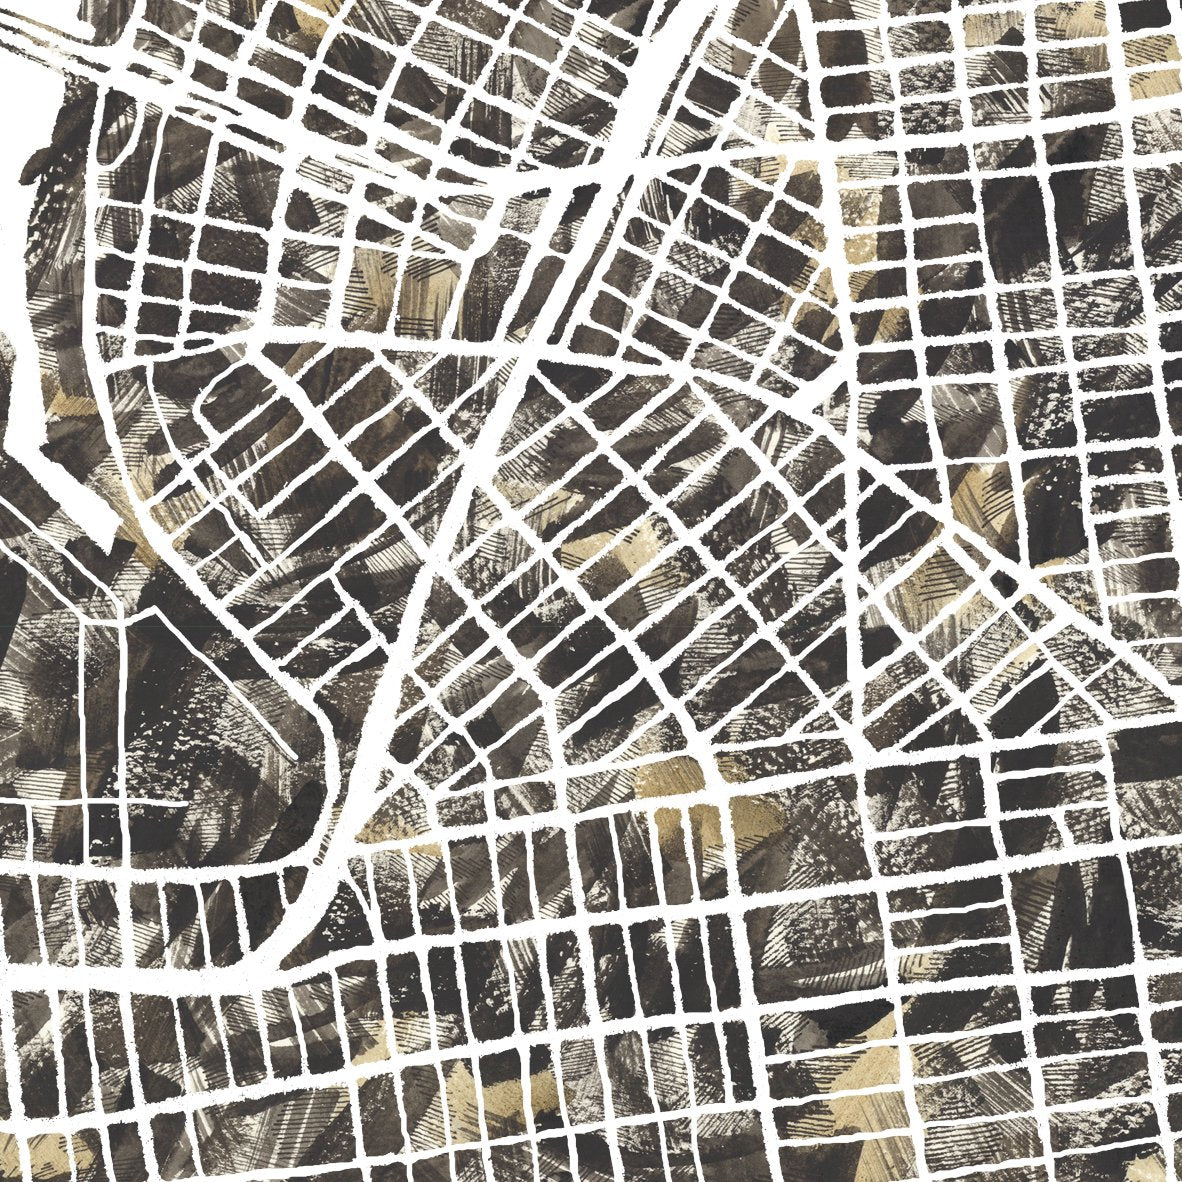 WILLIAMSBURG BROOKLYN Urban Fabrics City Map: PRINT